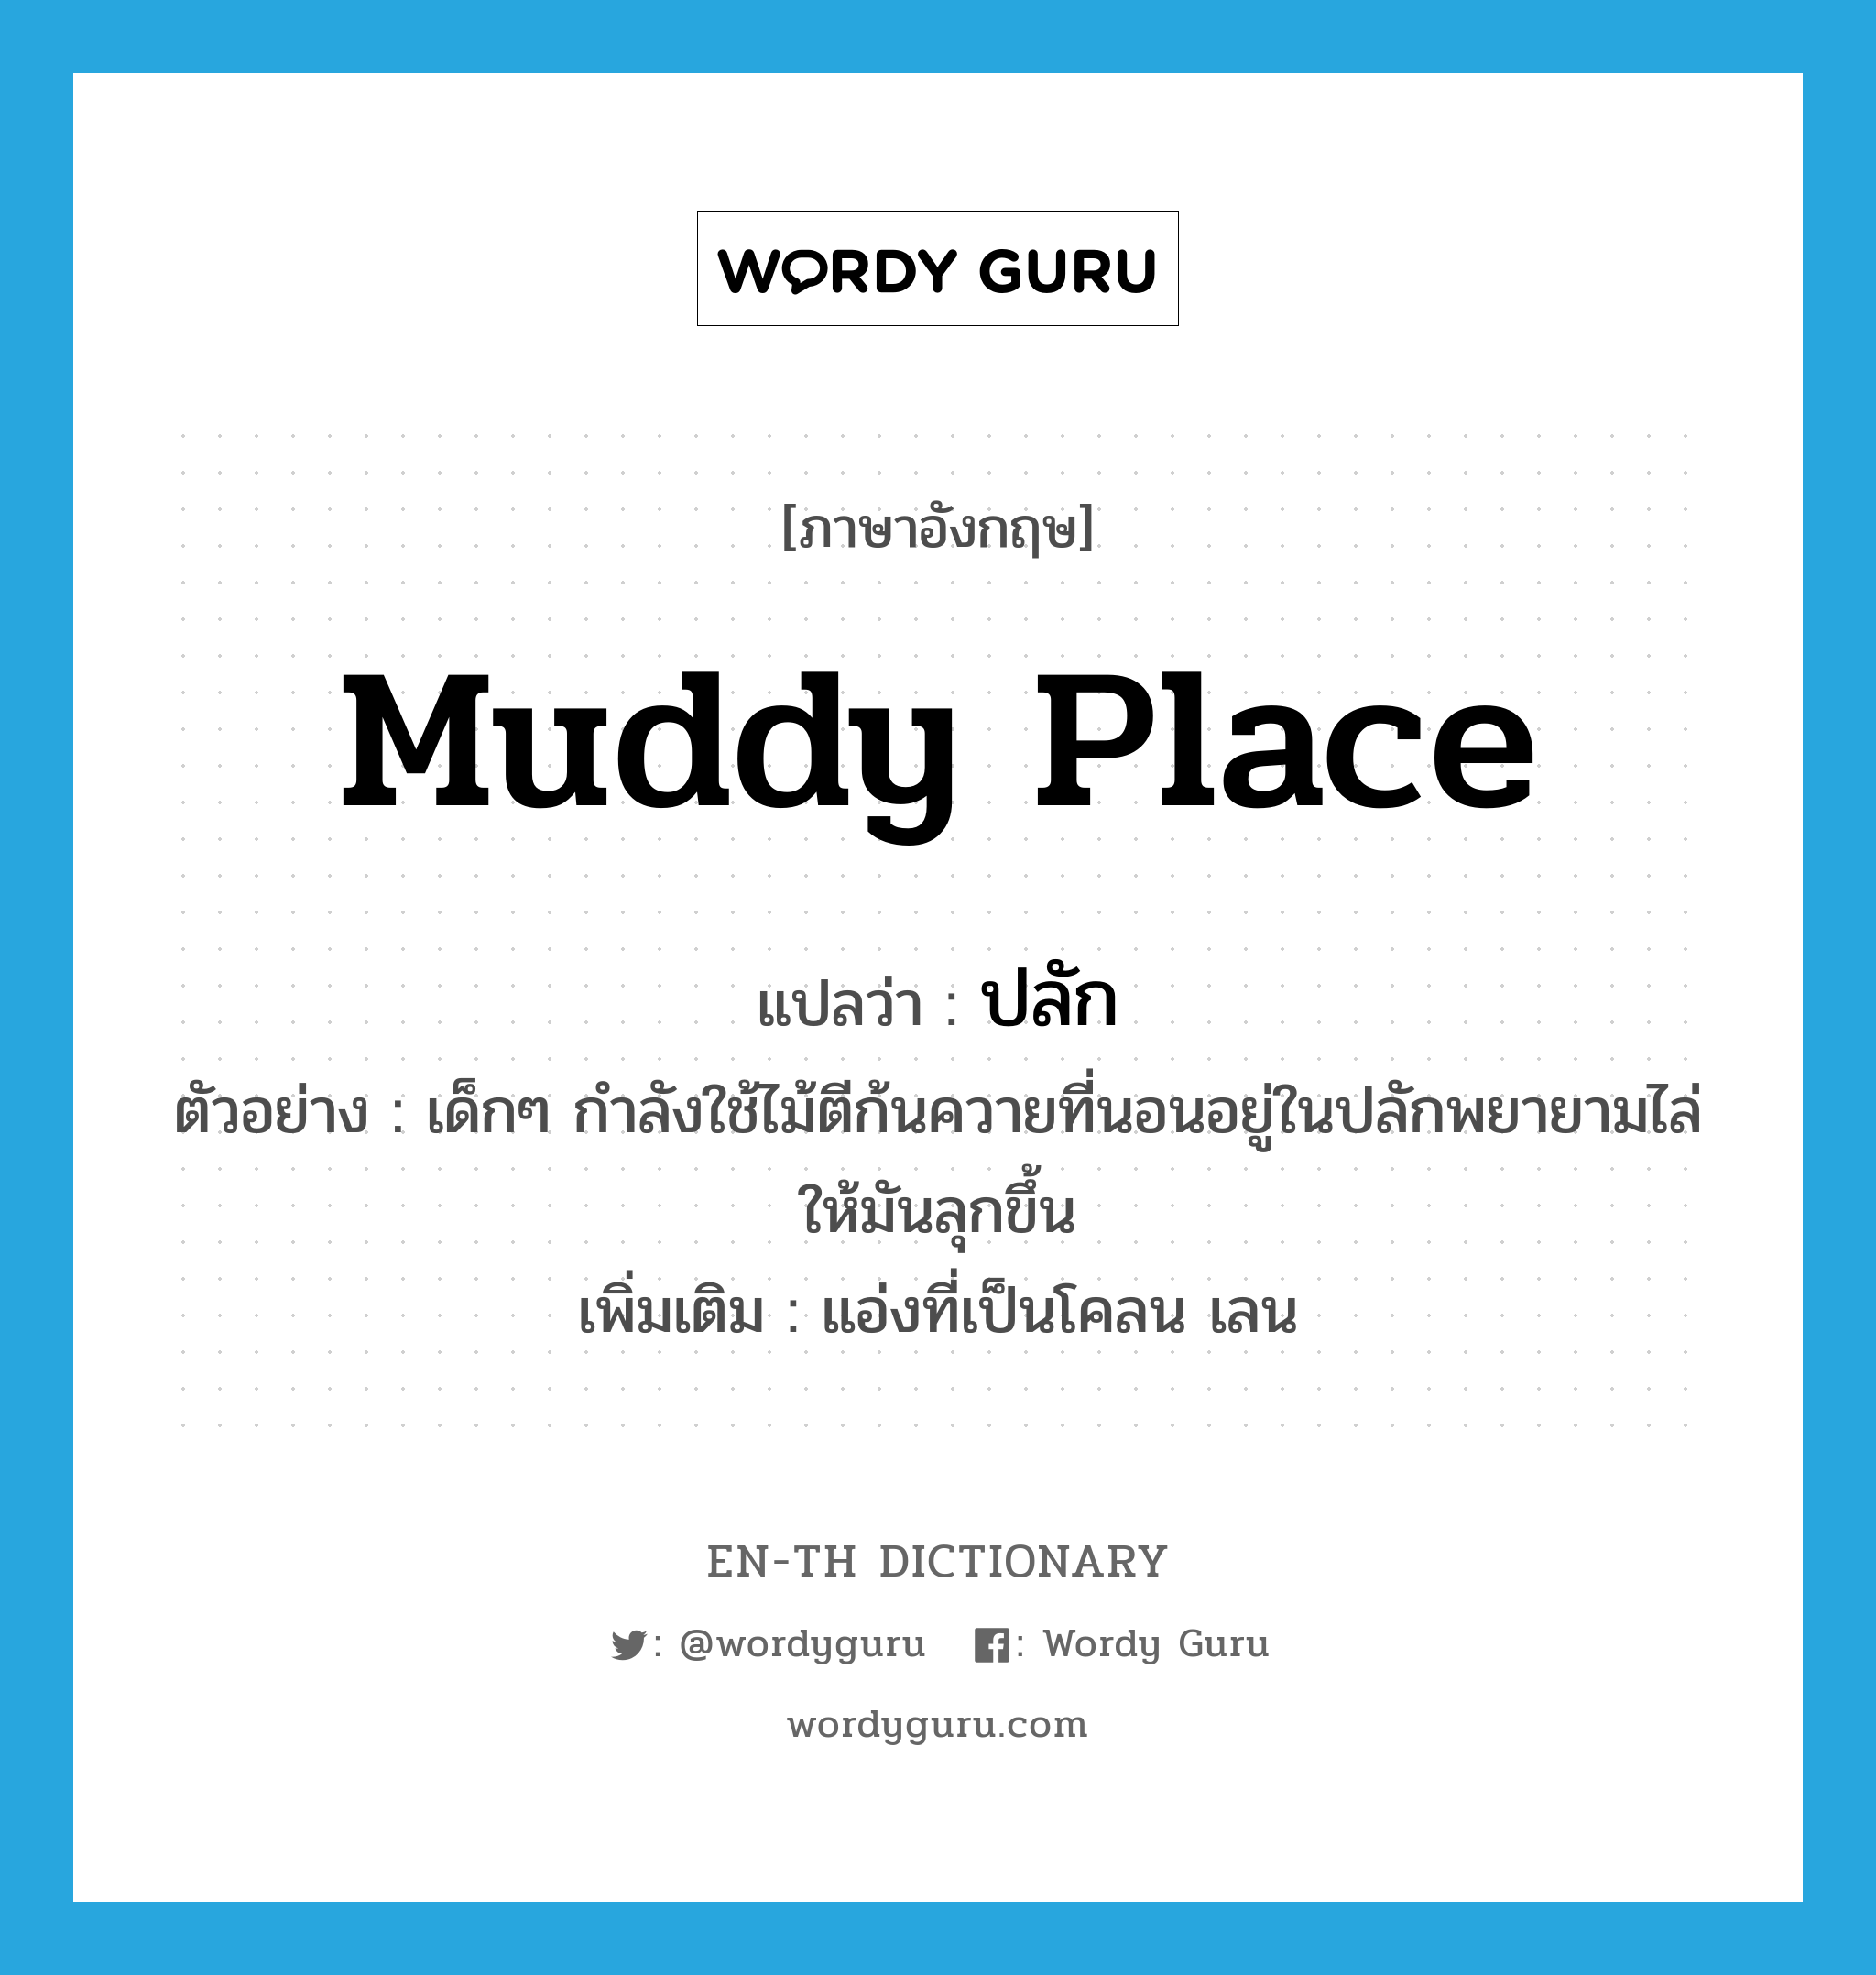 muddy place แปลว่า?, คำศัพท์ภาษาอังกฤษ muddy place แปลว่า ปลัก ประเภท N ตัวอย่าง เด็กๆ กำลังใช้ไม้ตีก้นควายที่นอนอยู่ในปลักพยายามไล่ให้มันลุกขึ้น เพิ่มเติม แอ่งที่เป็นโคลน เลน หมวด N